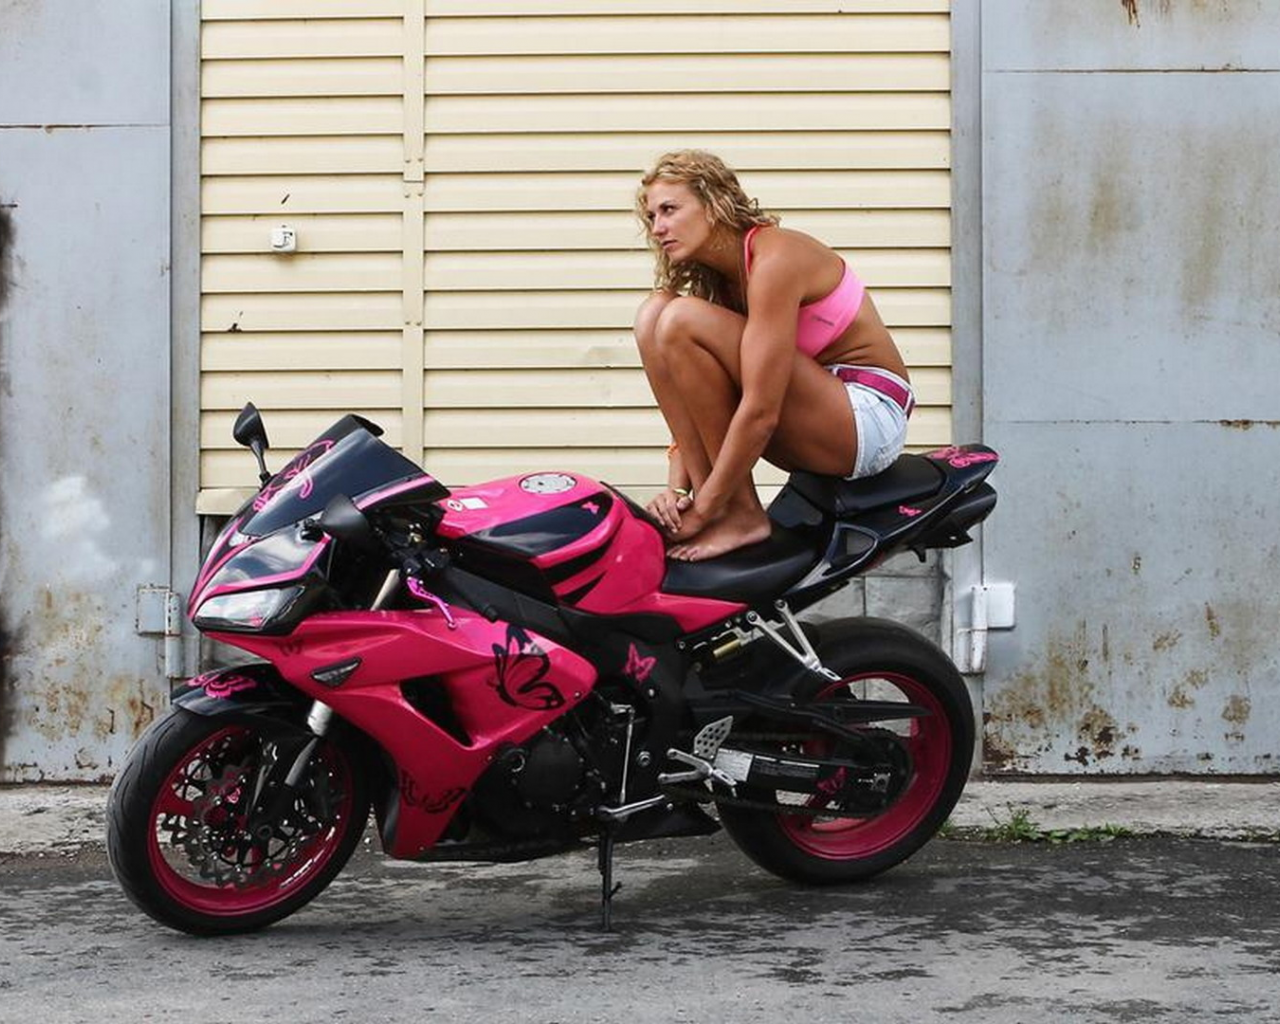 девушка, мотоцикл, поза, фон, мотоциклетка